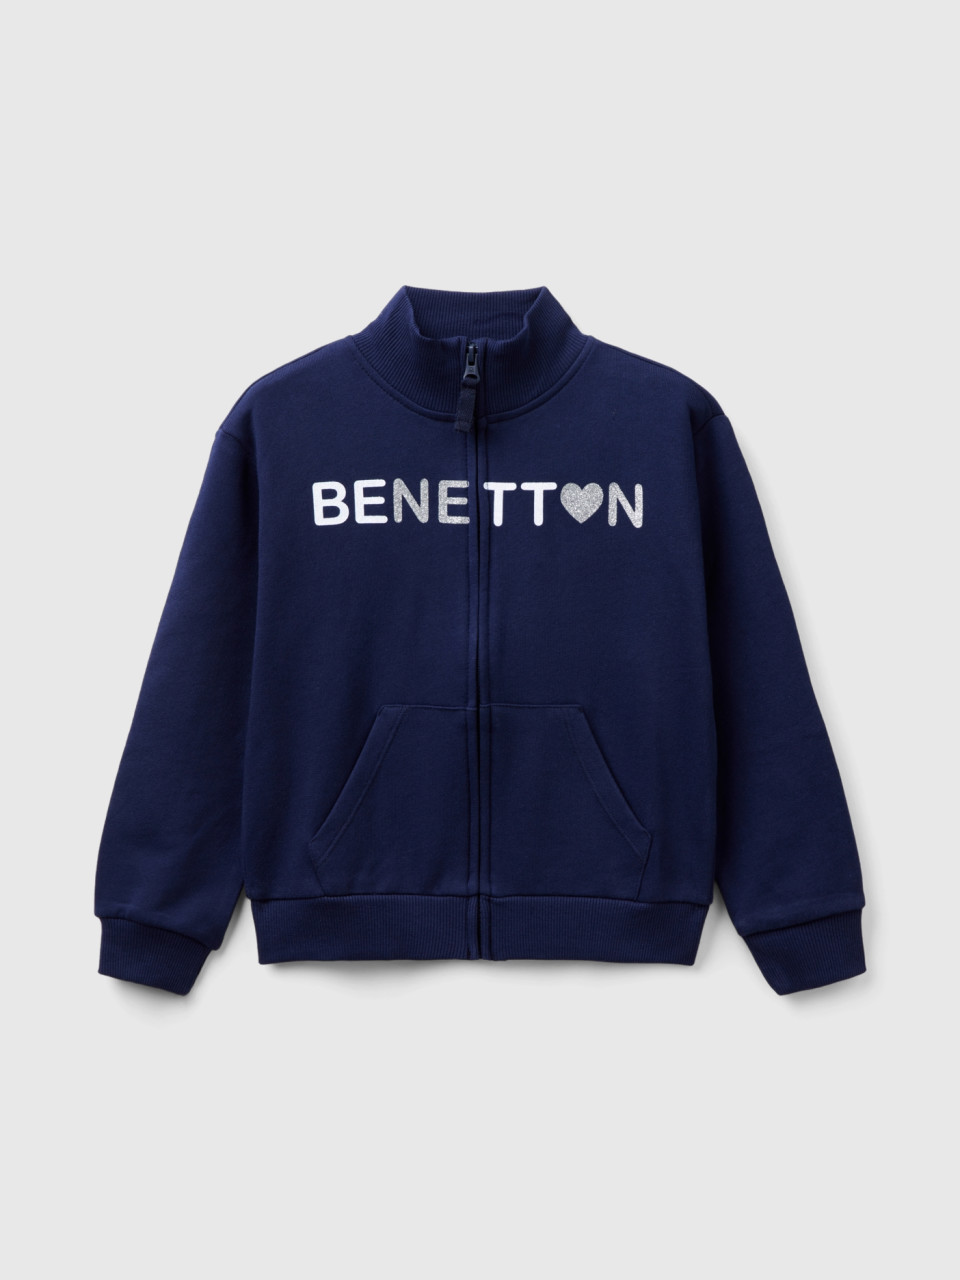 Benetton, Sweatshirt Mit Reißverschluss Und Kragen, Dunkelblau, female